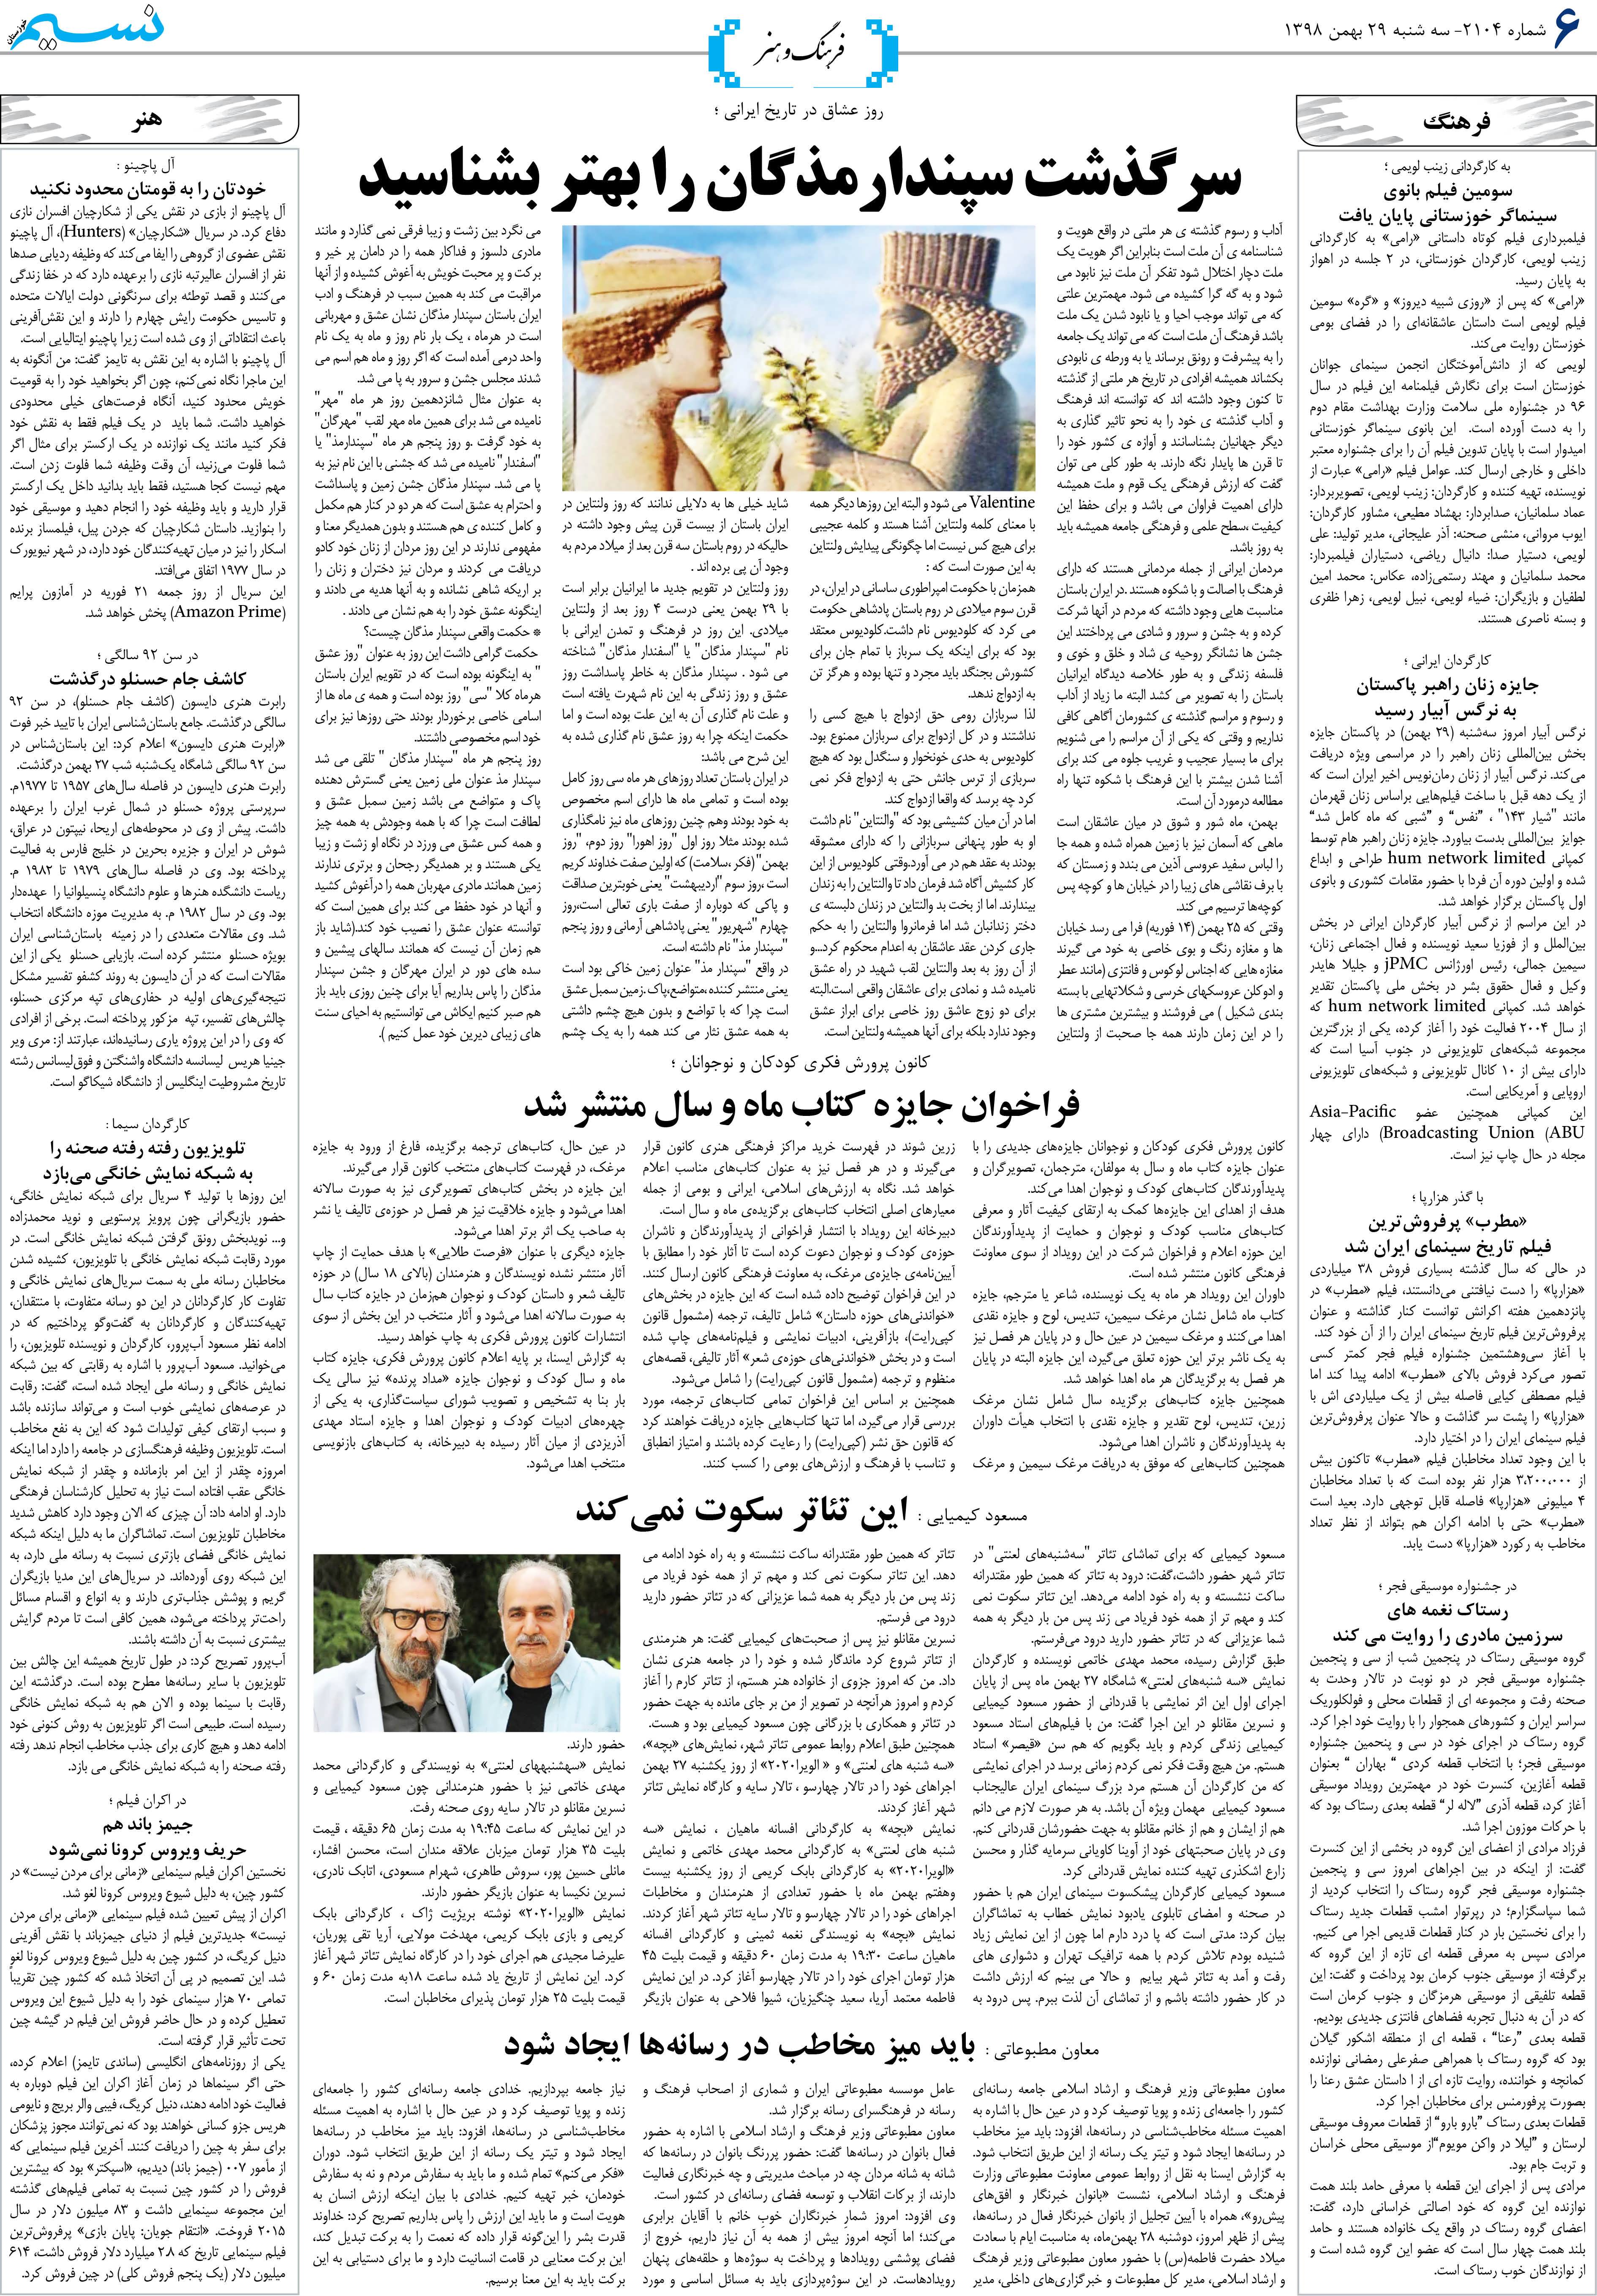 صفحه فرهنگ و هنر روزنامه نسیم شماره 2104